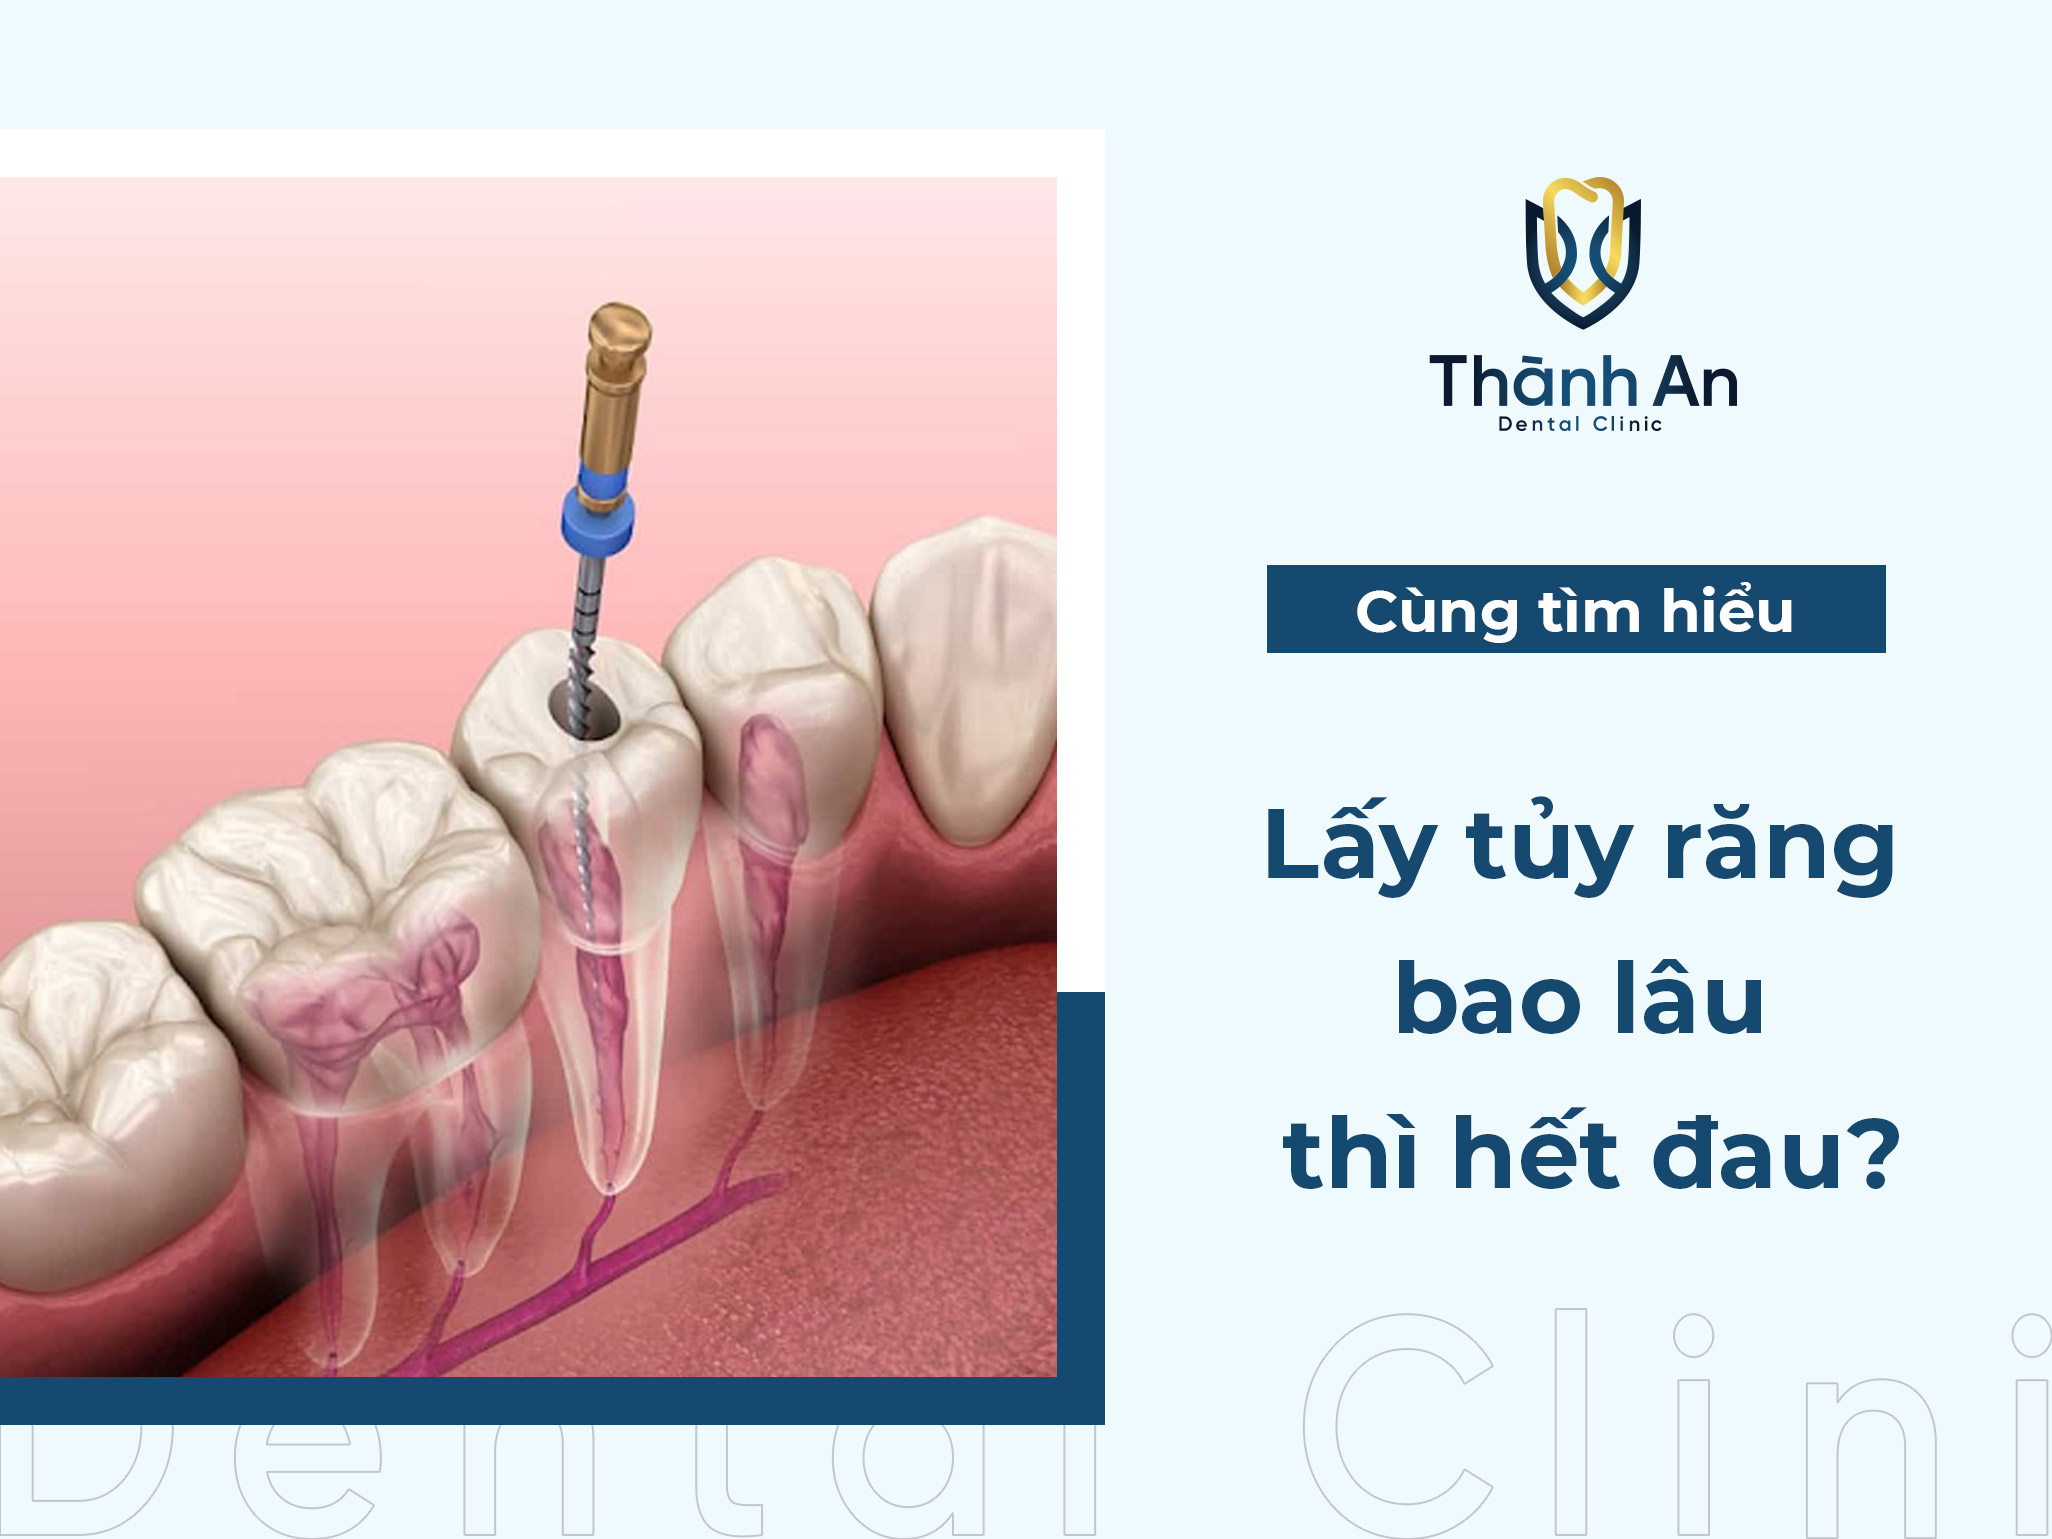 Lấy tủy răng bao lâu thì hết đau? cần điều trị bao nhiêu lần